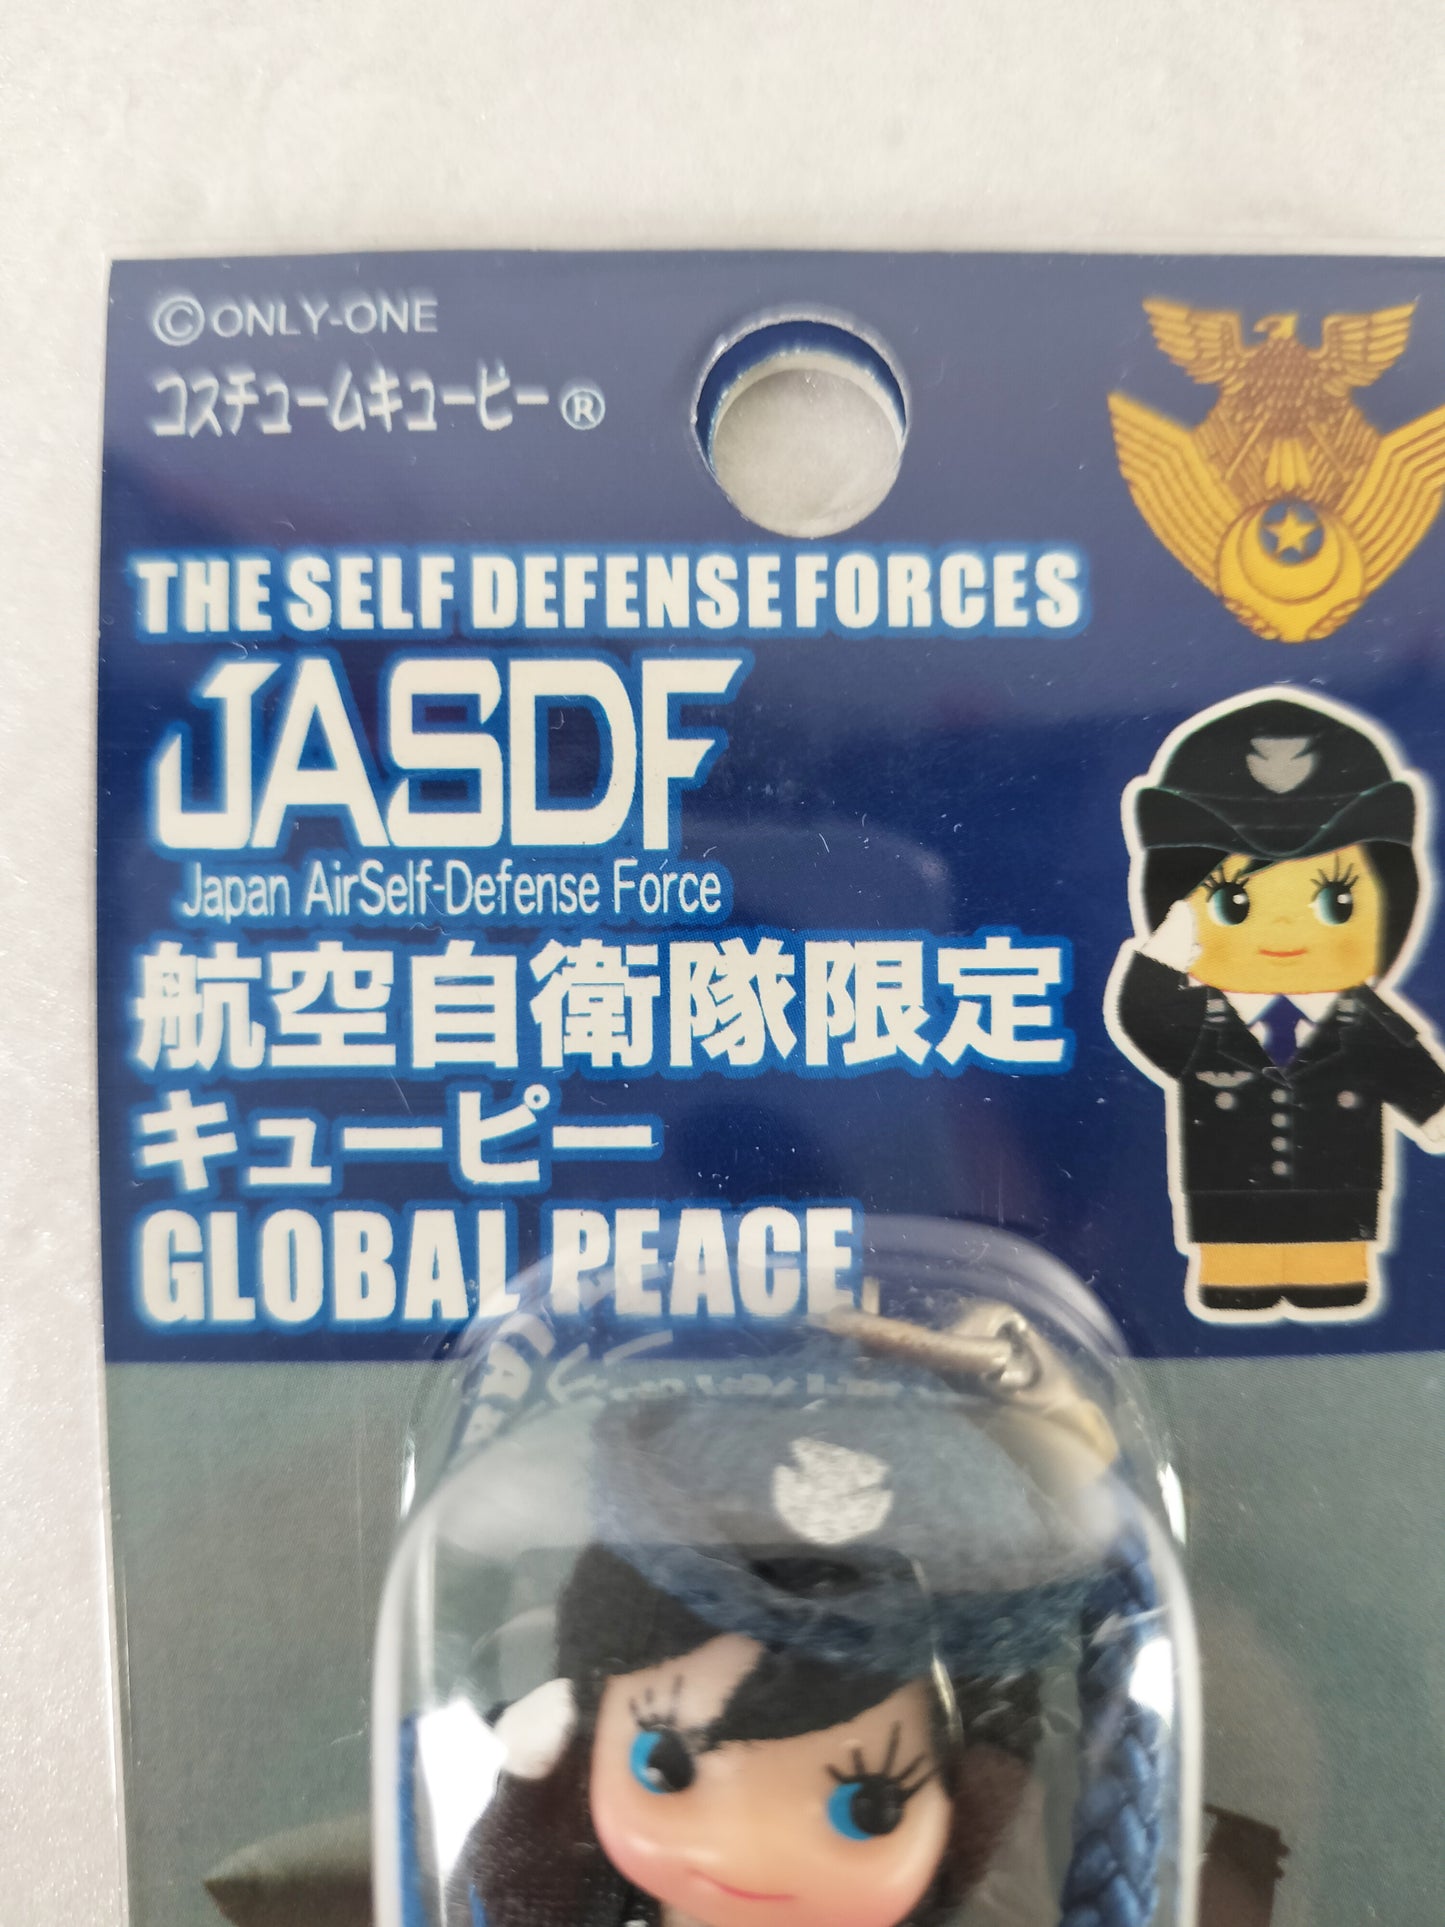 Kewpie Strap  JASDF Limited Version "Self-Defense Force Limited Kewpie" vintage